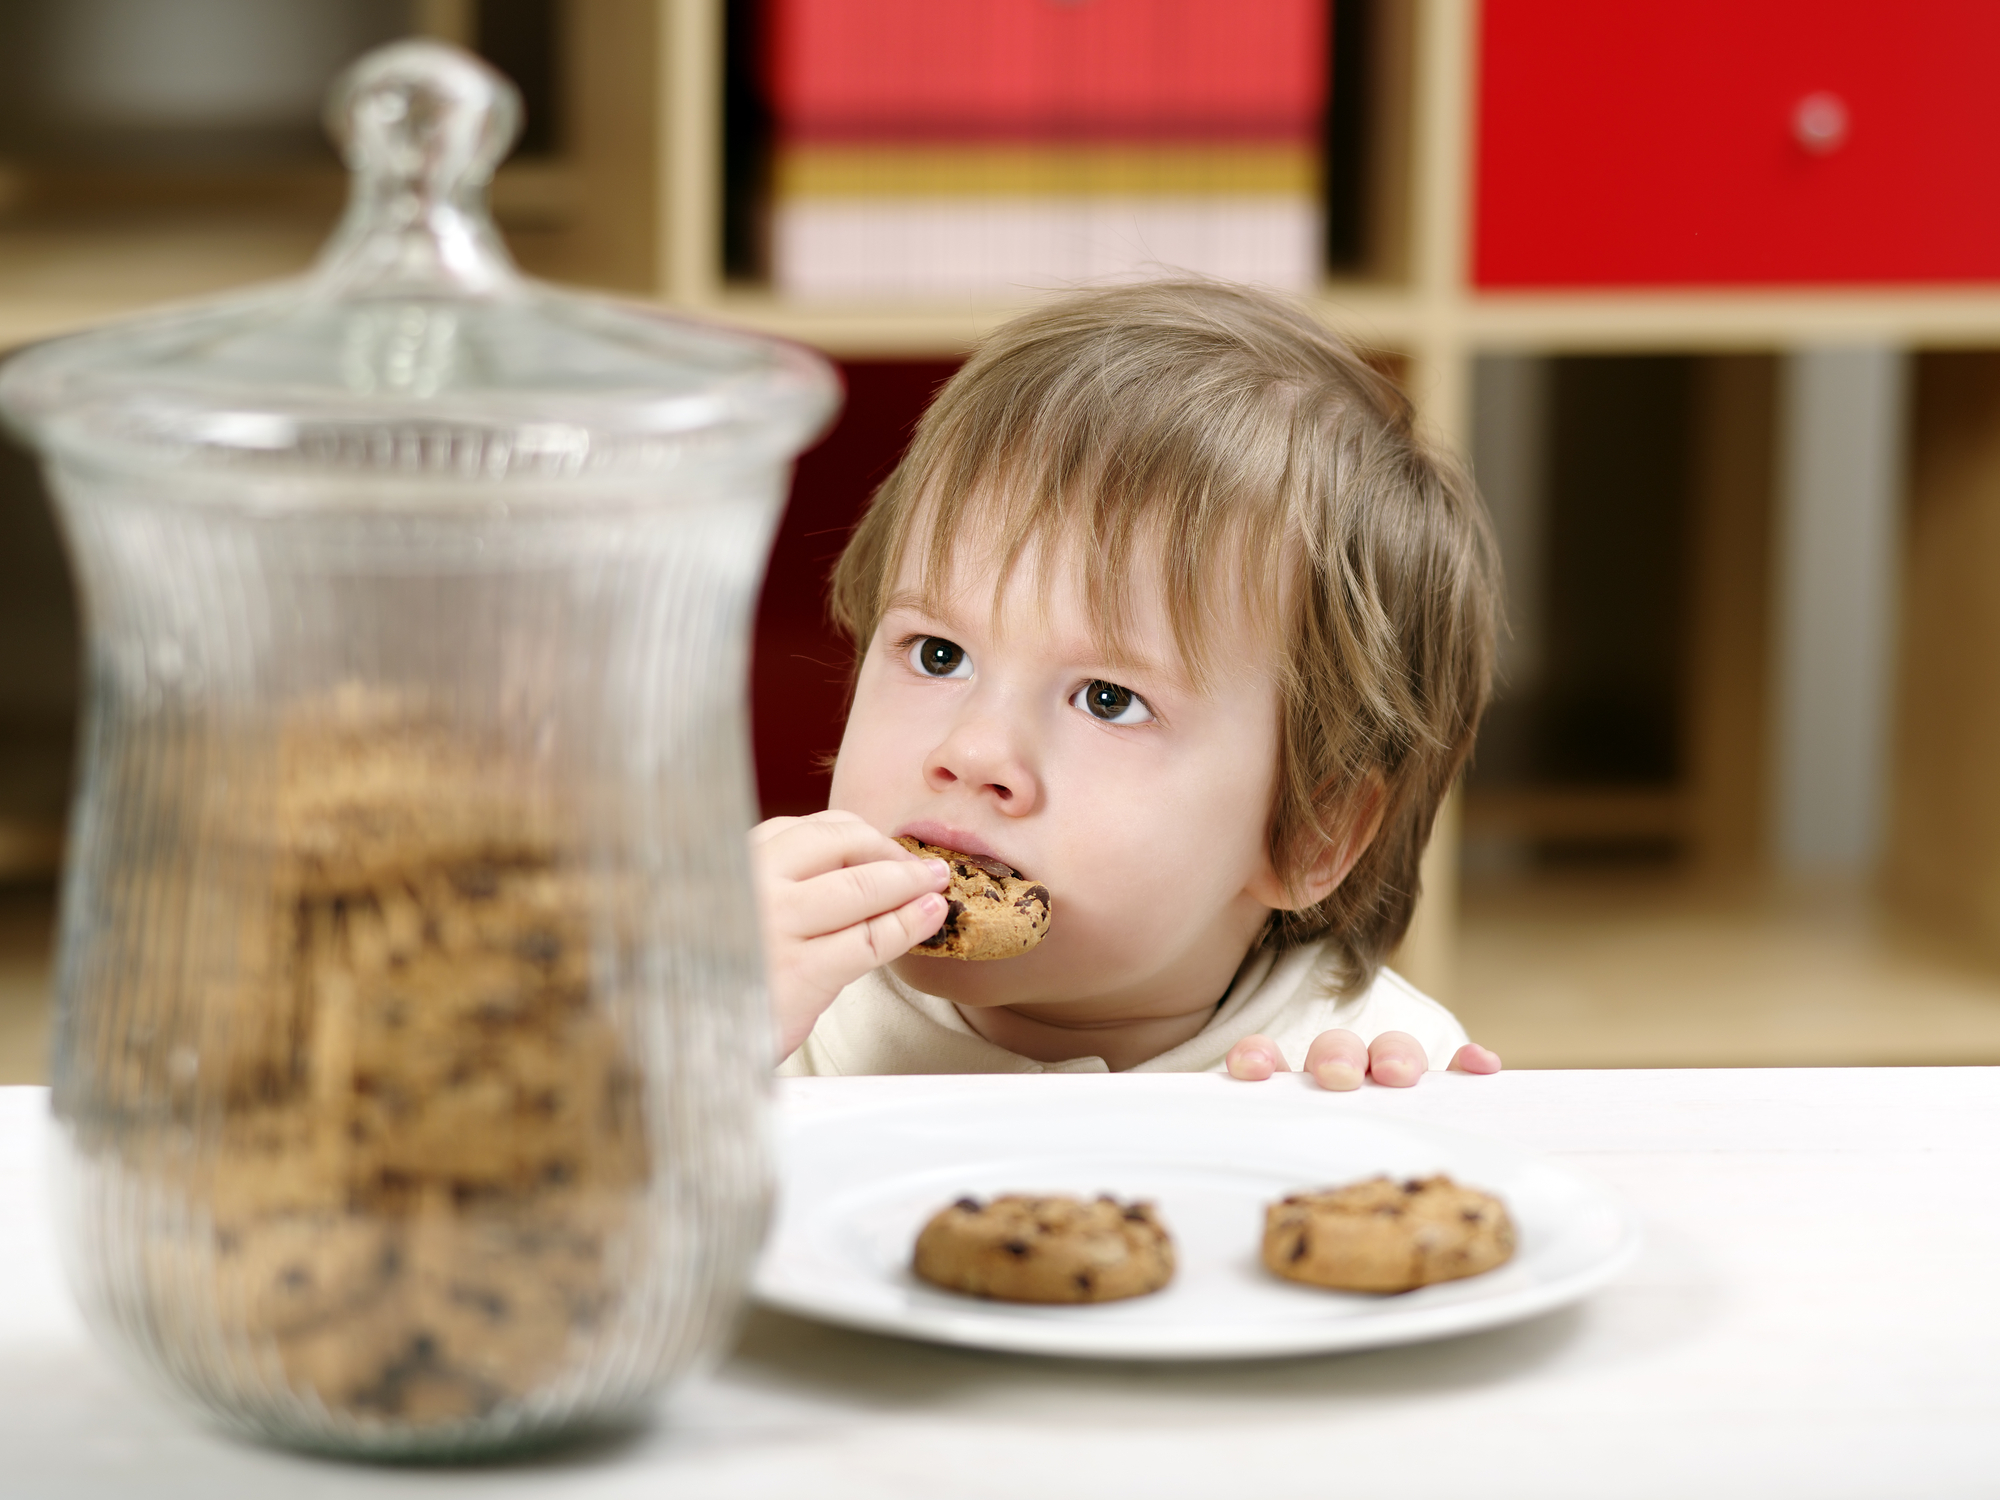 Riscos dos Alimentos Ultraprocessados no Cardápio Infantil